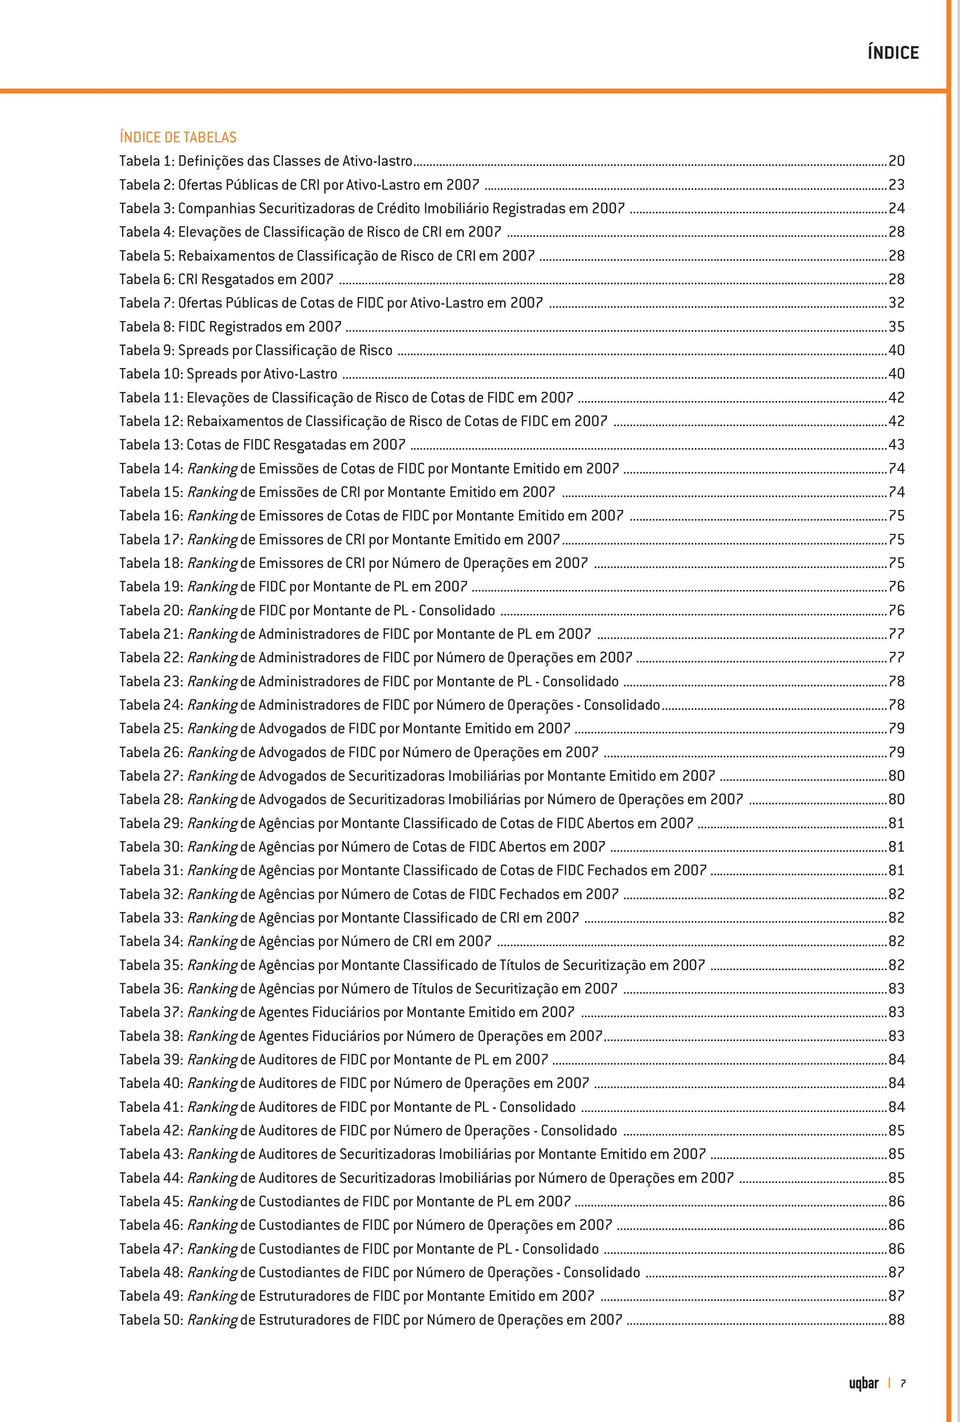 ..28 Tabela 5: Rebaixamentos de Classificação de Risco de CRI em 2007...28 Tabela 6: CRI Resgatados em 2007...28 Tabela 7: Ofertas Públicas de Cotas de FIDC por Ativo-Lastro em 2007.